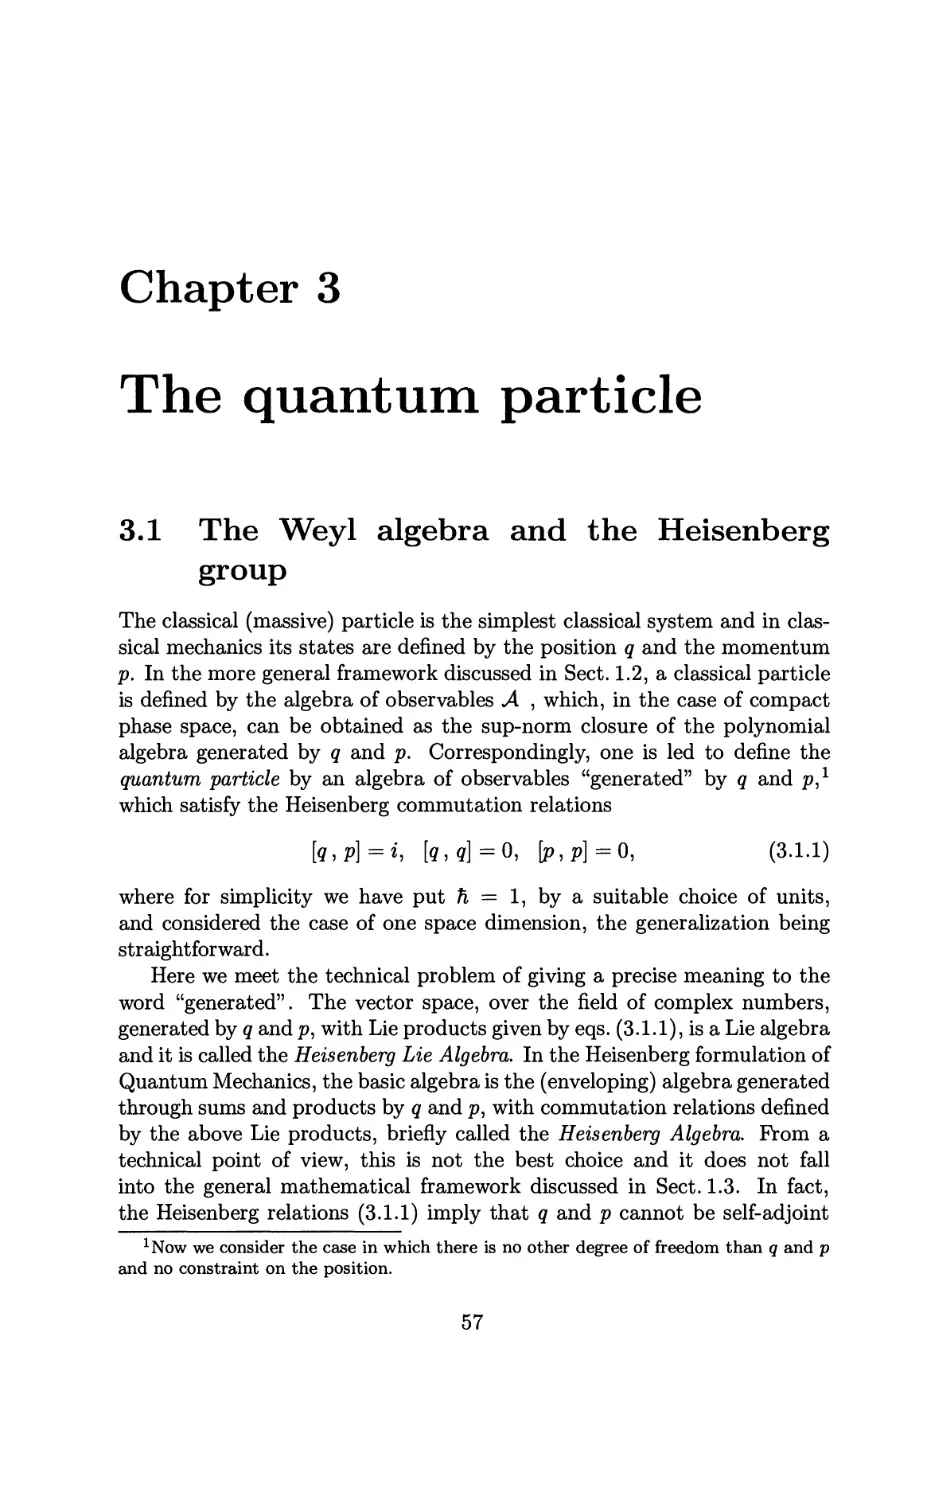 3 The quantum particle